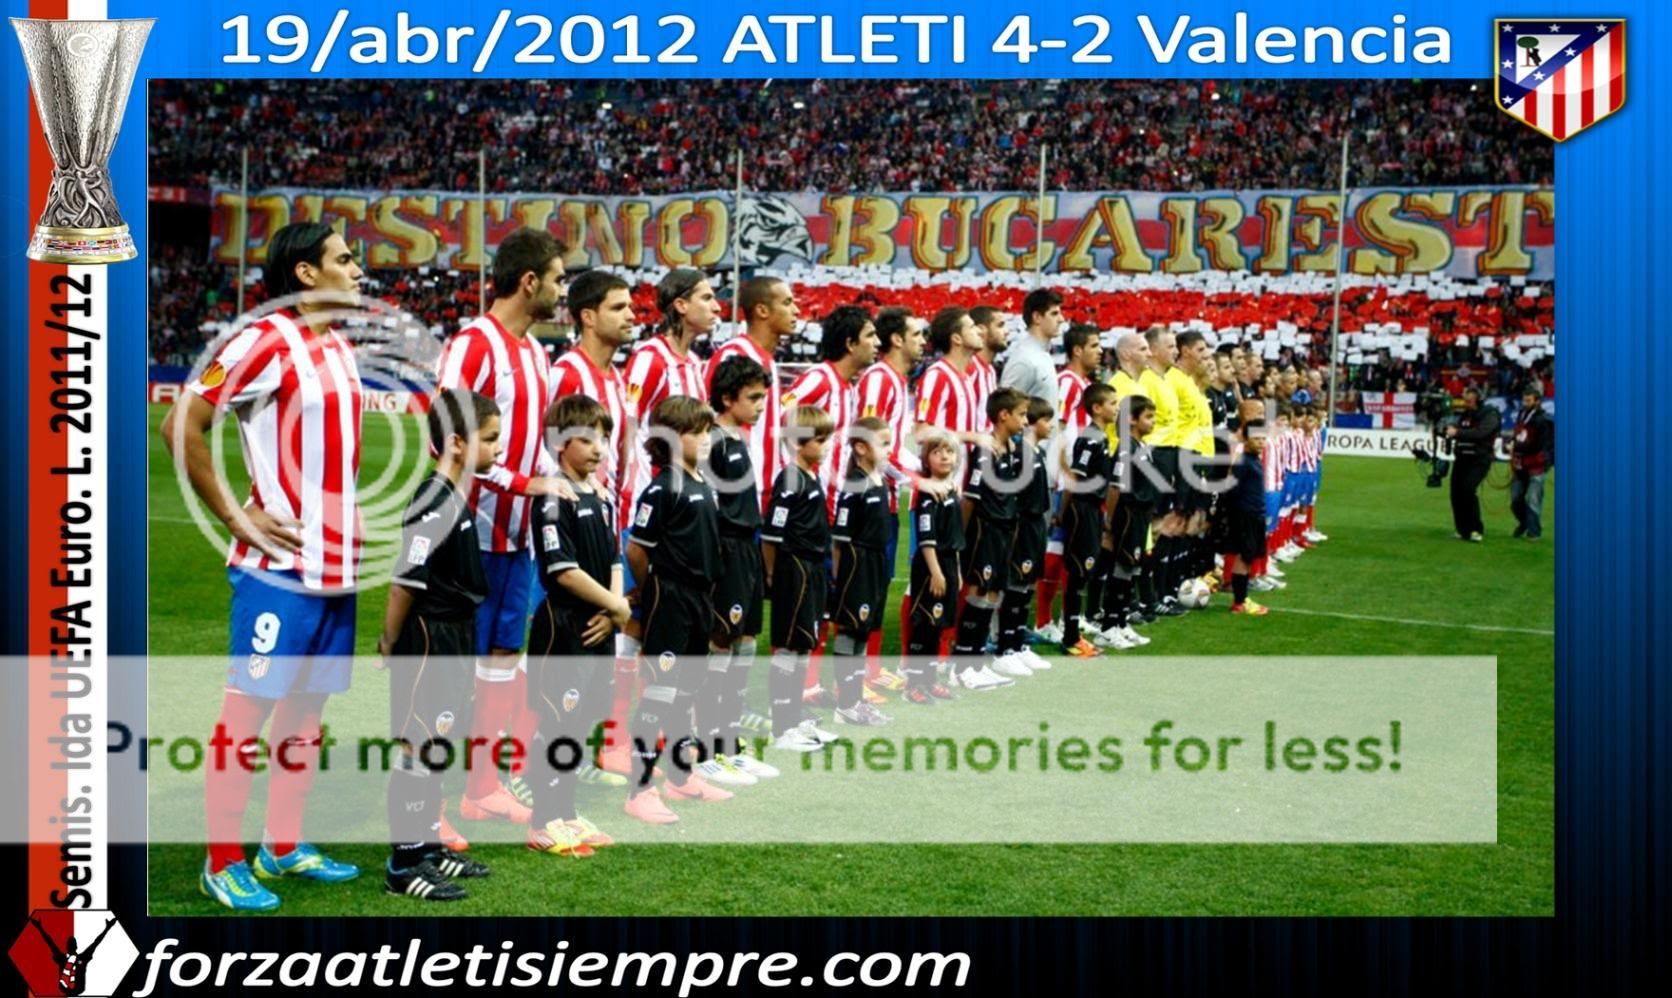 Semis. ida UEFA E. L. 2011/12 ATLETI 4-2 Valencia.- El Atlético se recon... 006aCopiar